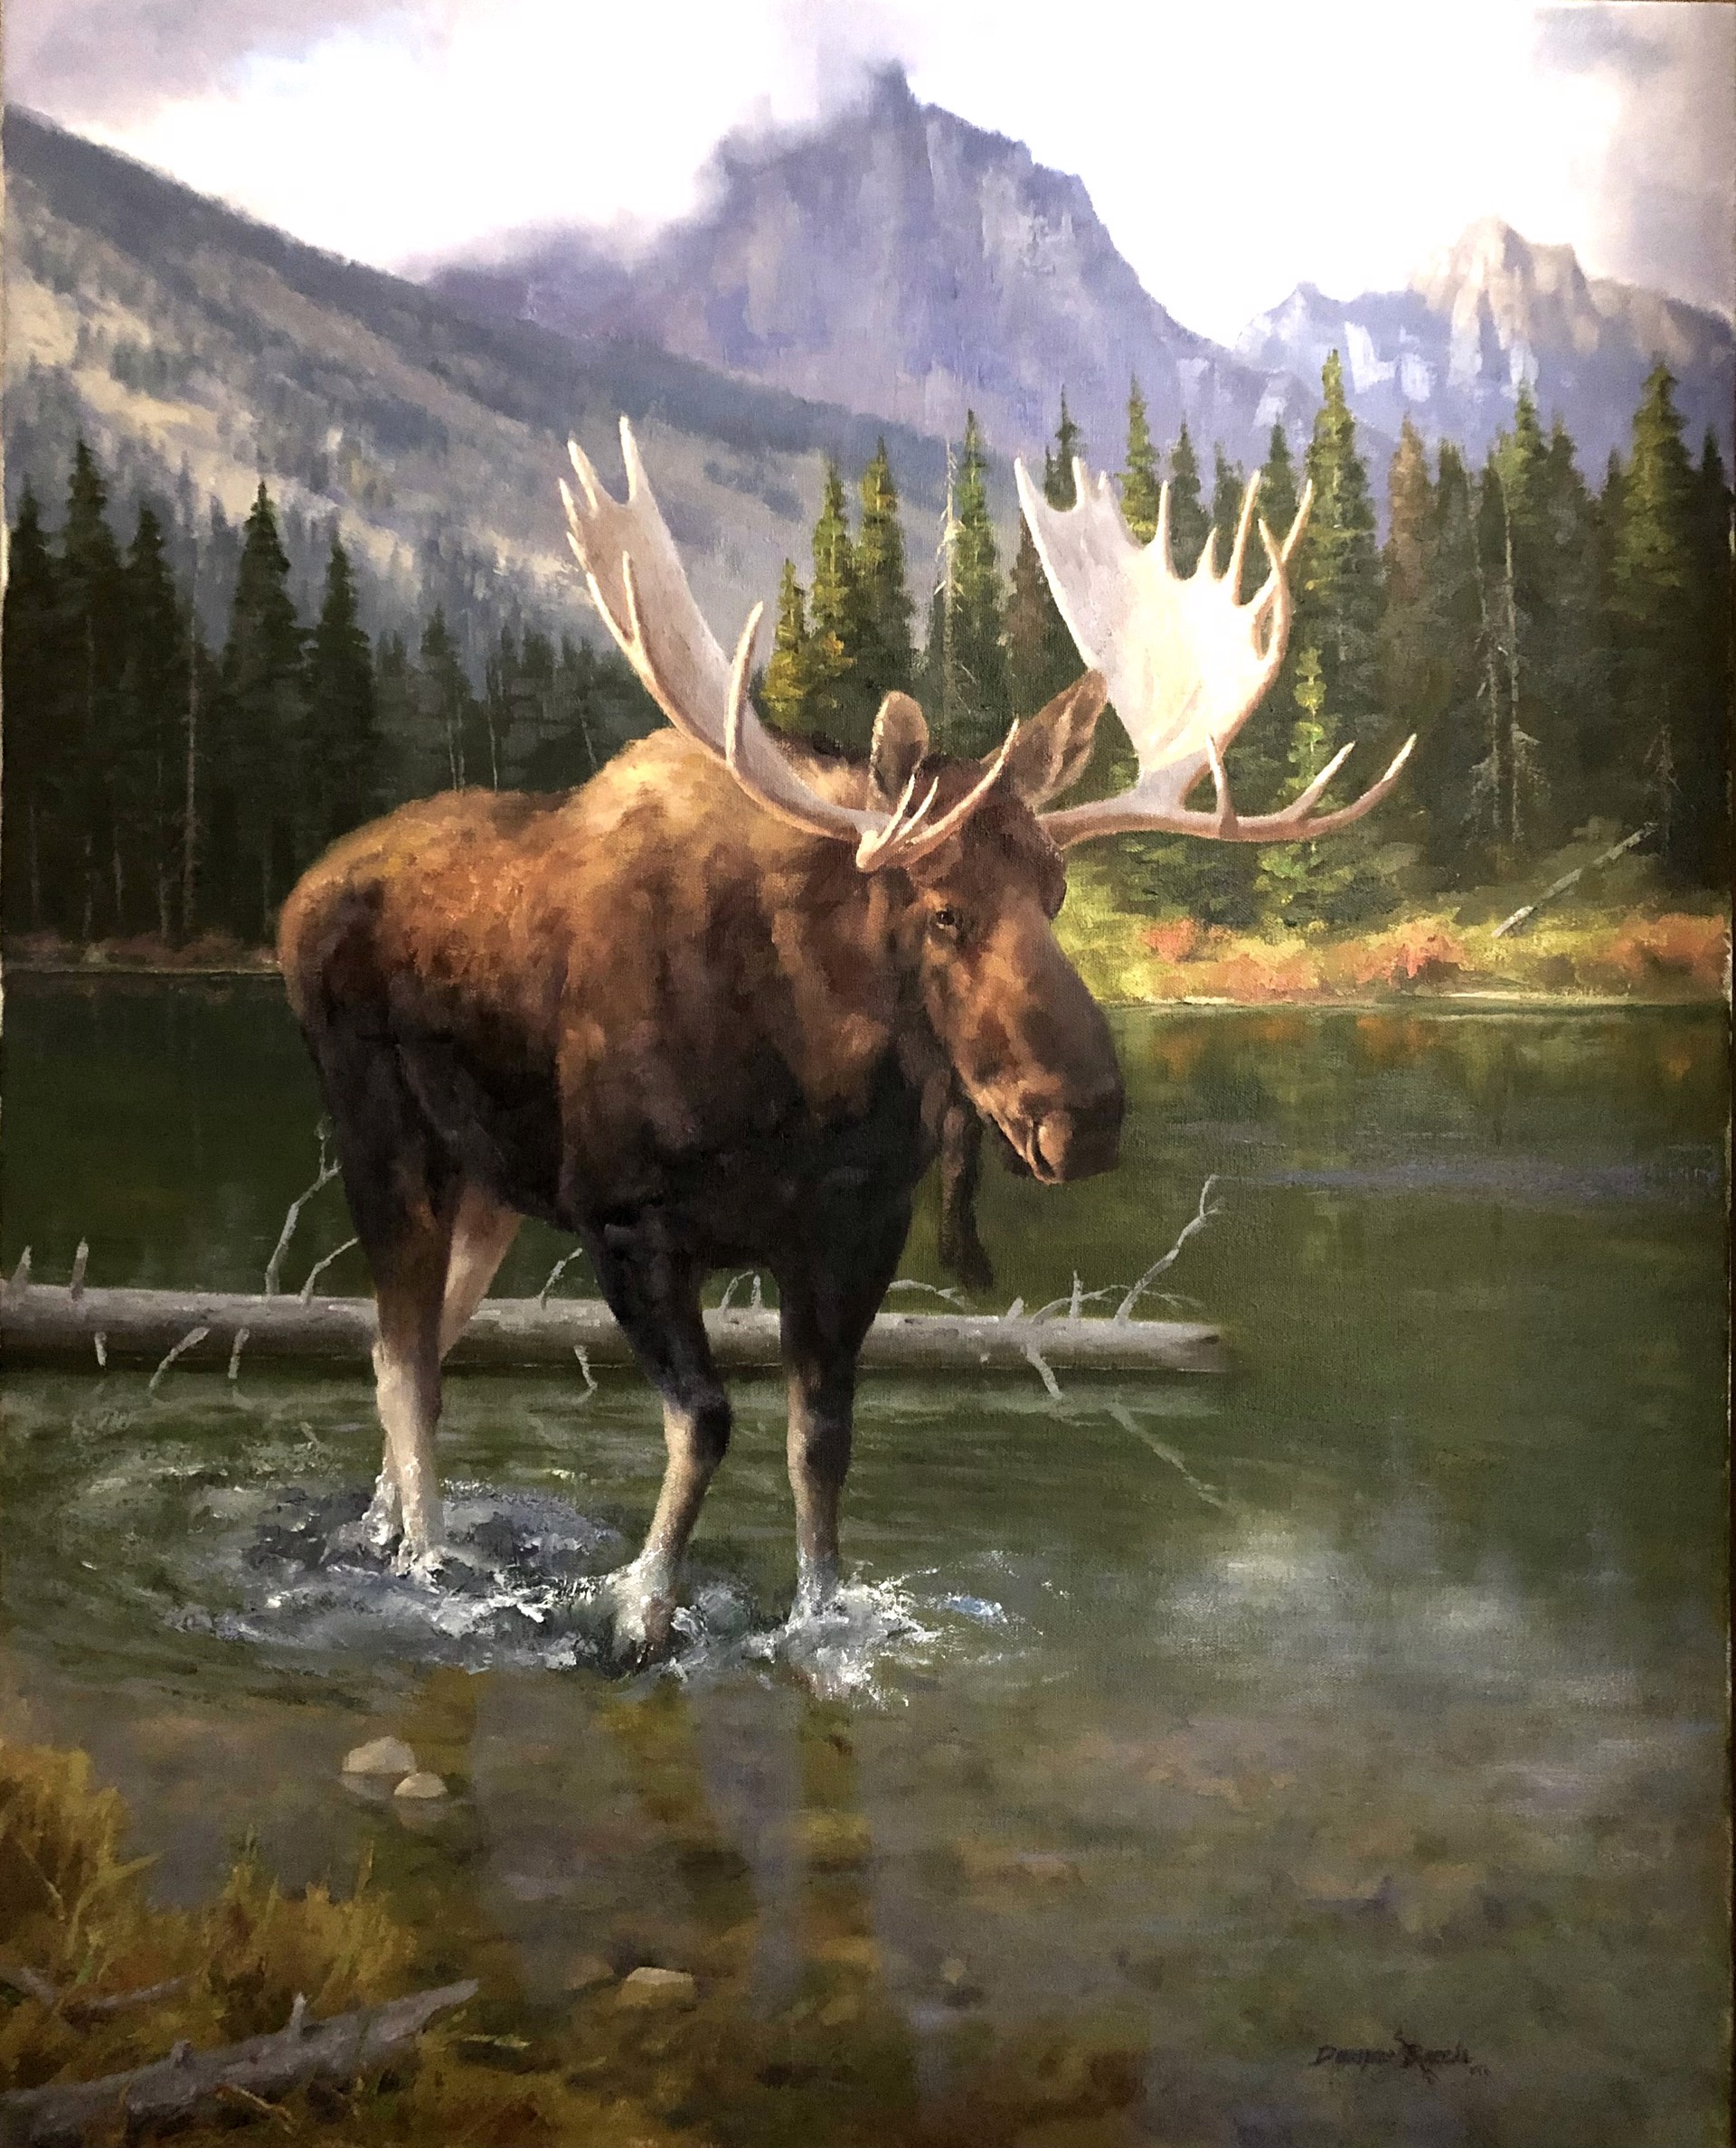 Yukon Giant by Dwayne Brech